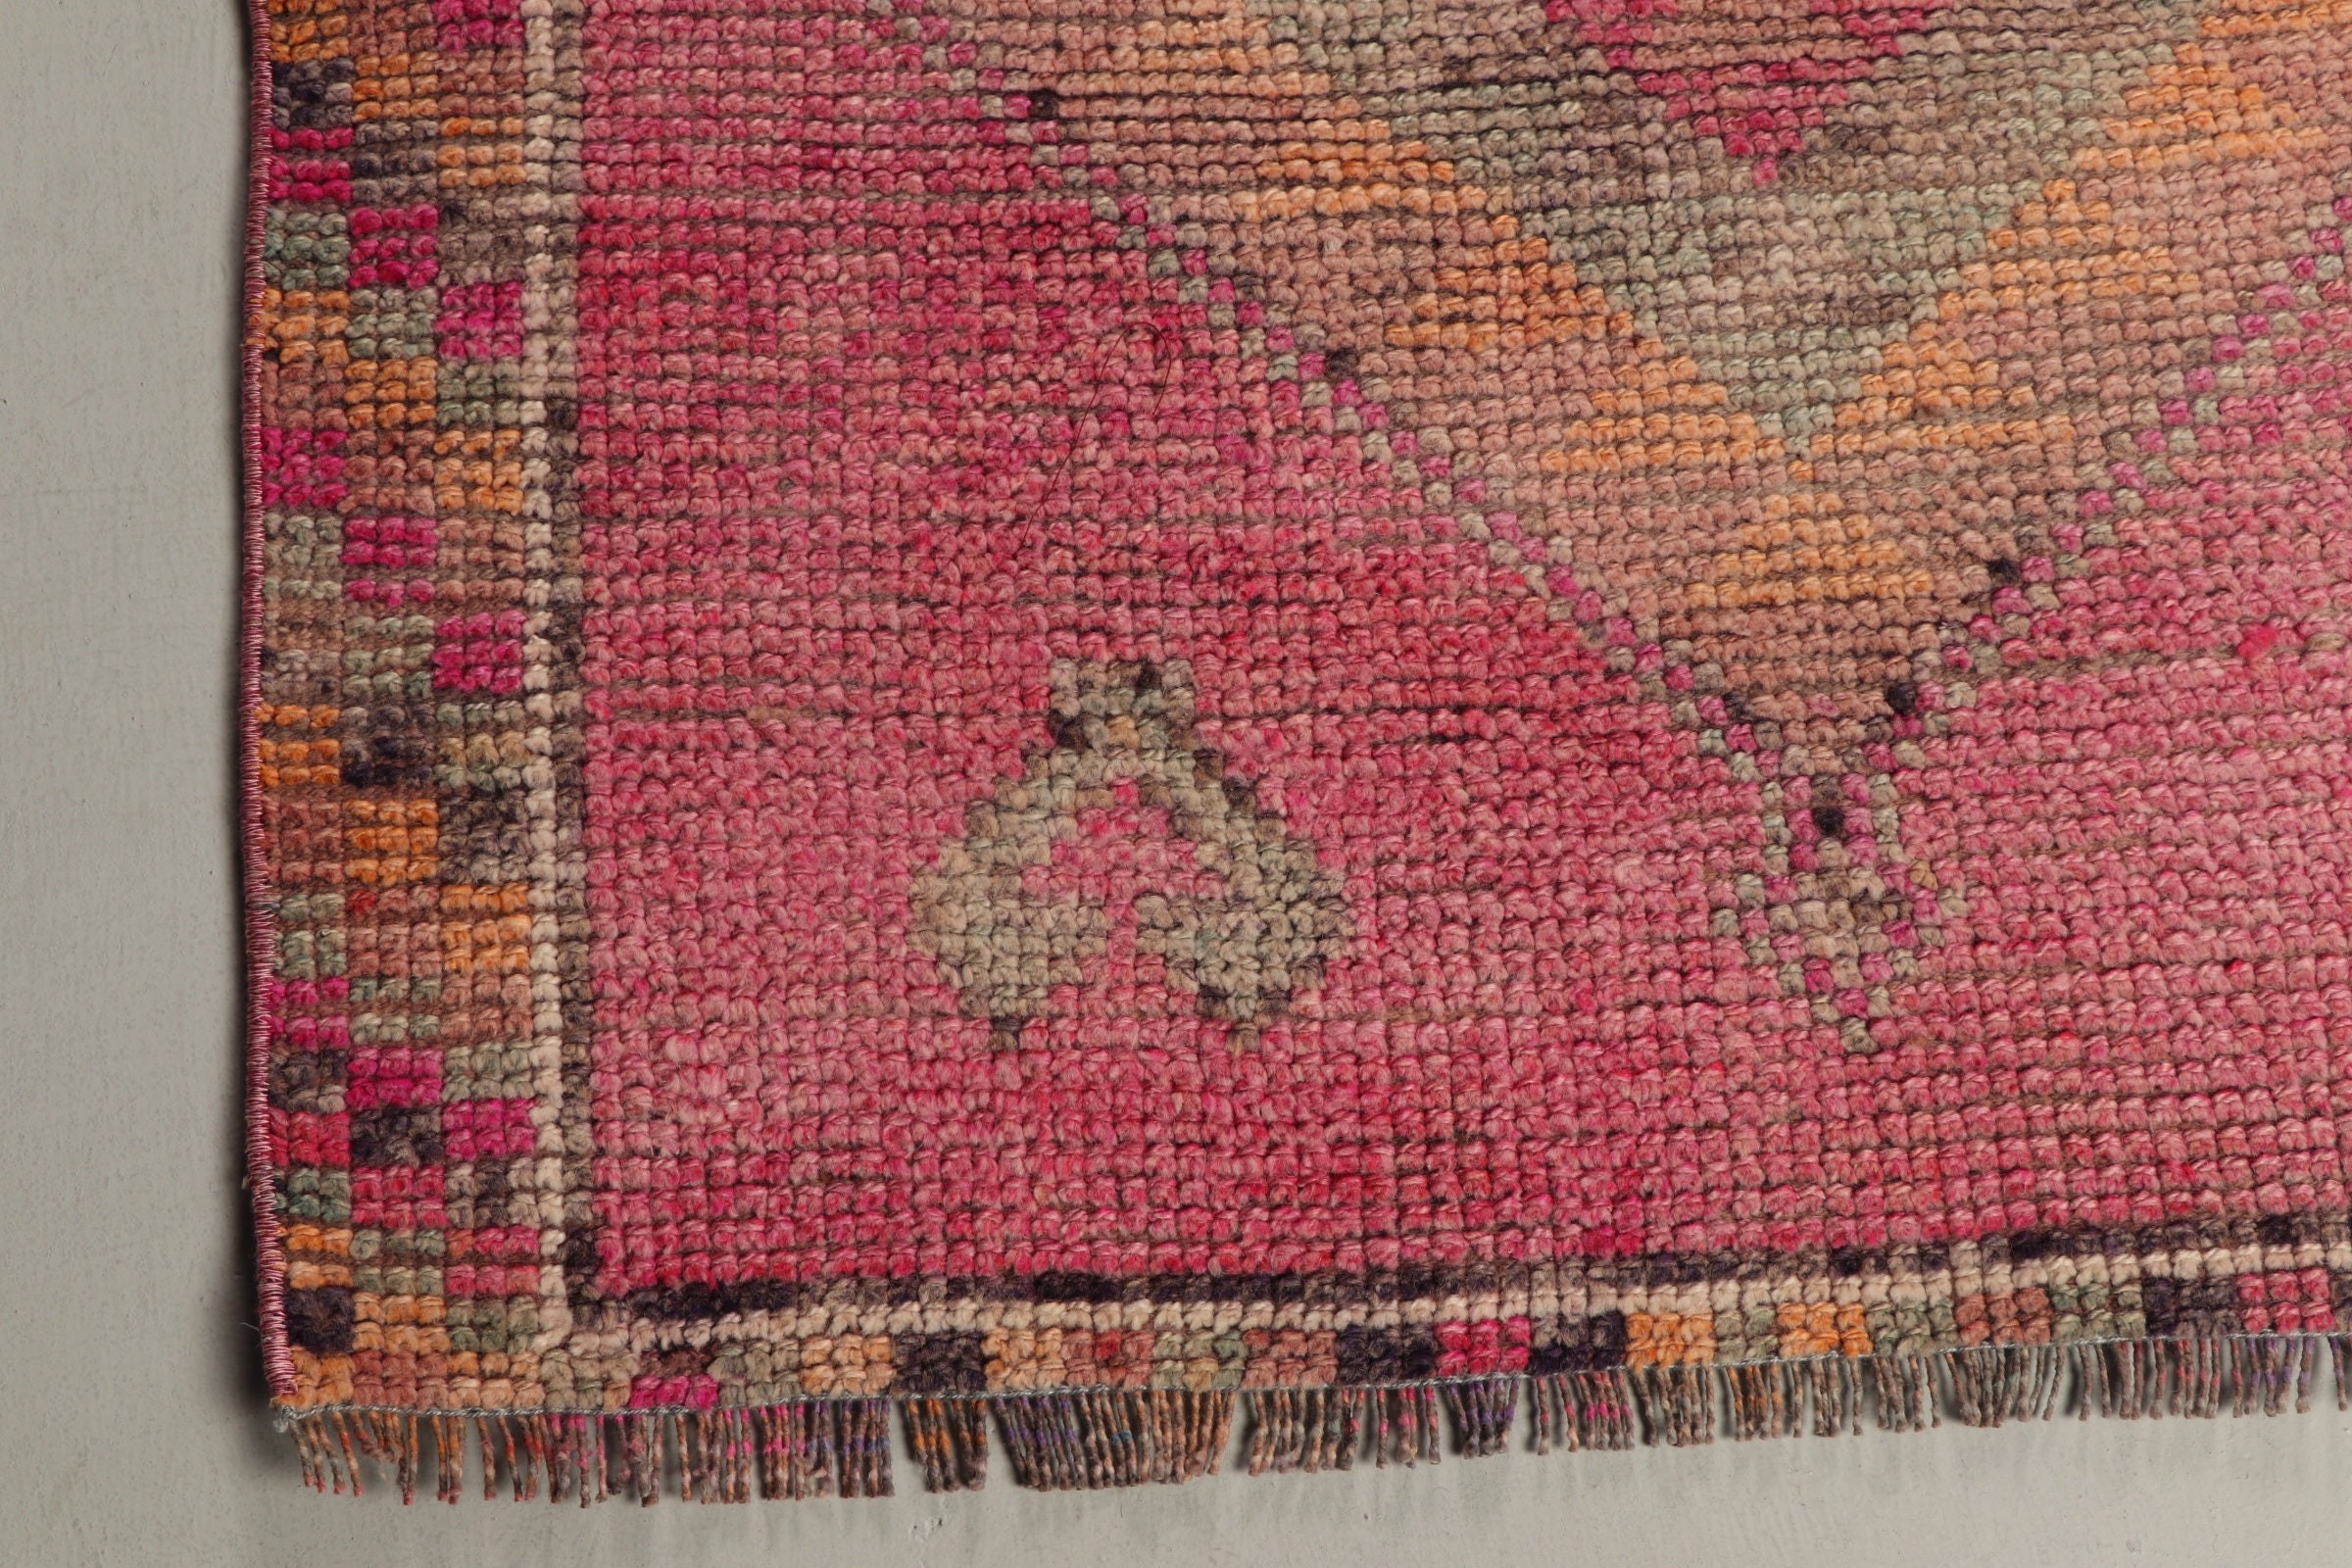 Antique Rug, Oriental Rug, Hallway Rug, 3.2x9.1 ft Runner Rug, Rugs for Hallway, Stair Rug, Pink Wool Rugs, Turkish Rug, Vintage Rug